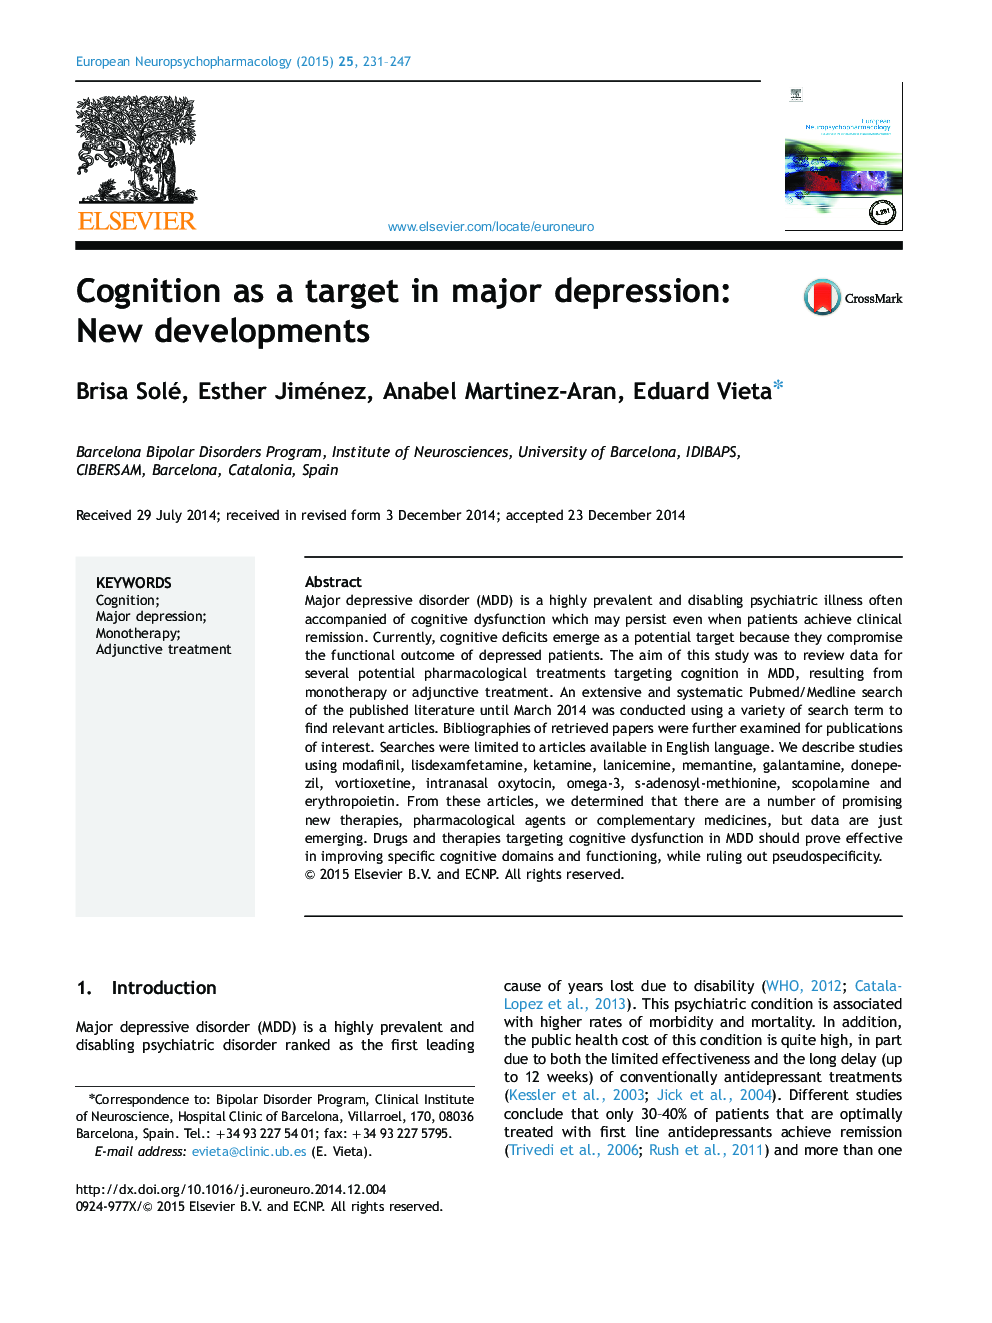 شناخت به عنوان یک هدف در افسردگی عمده: تحولات جدید 